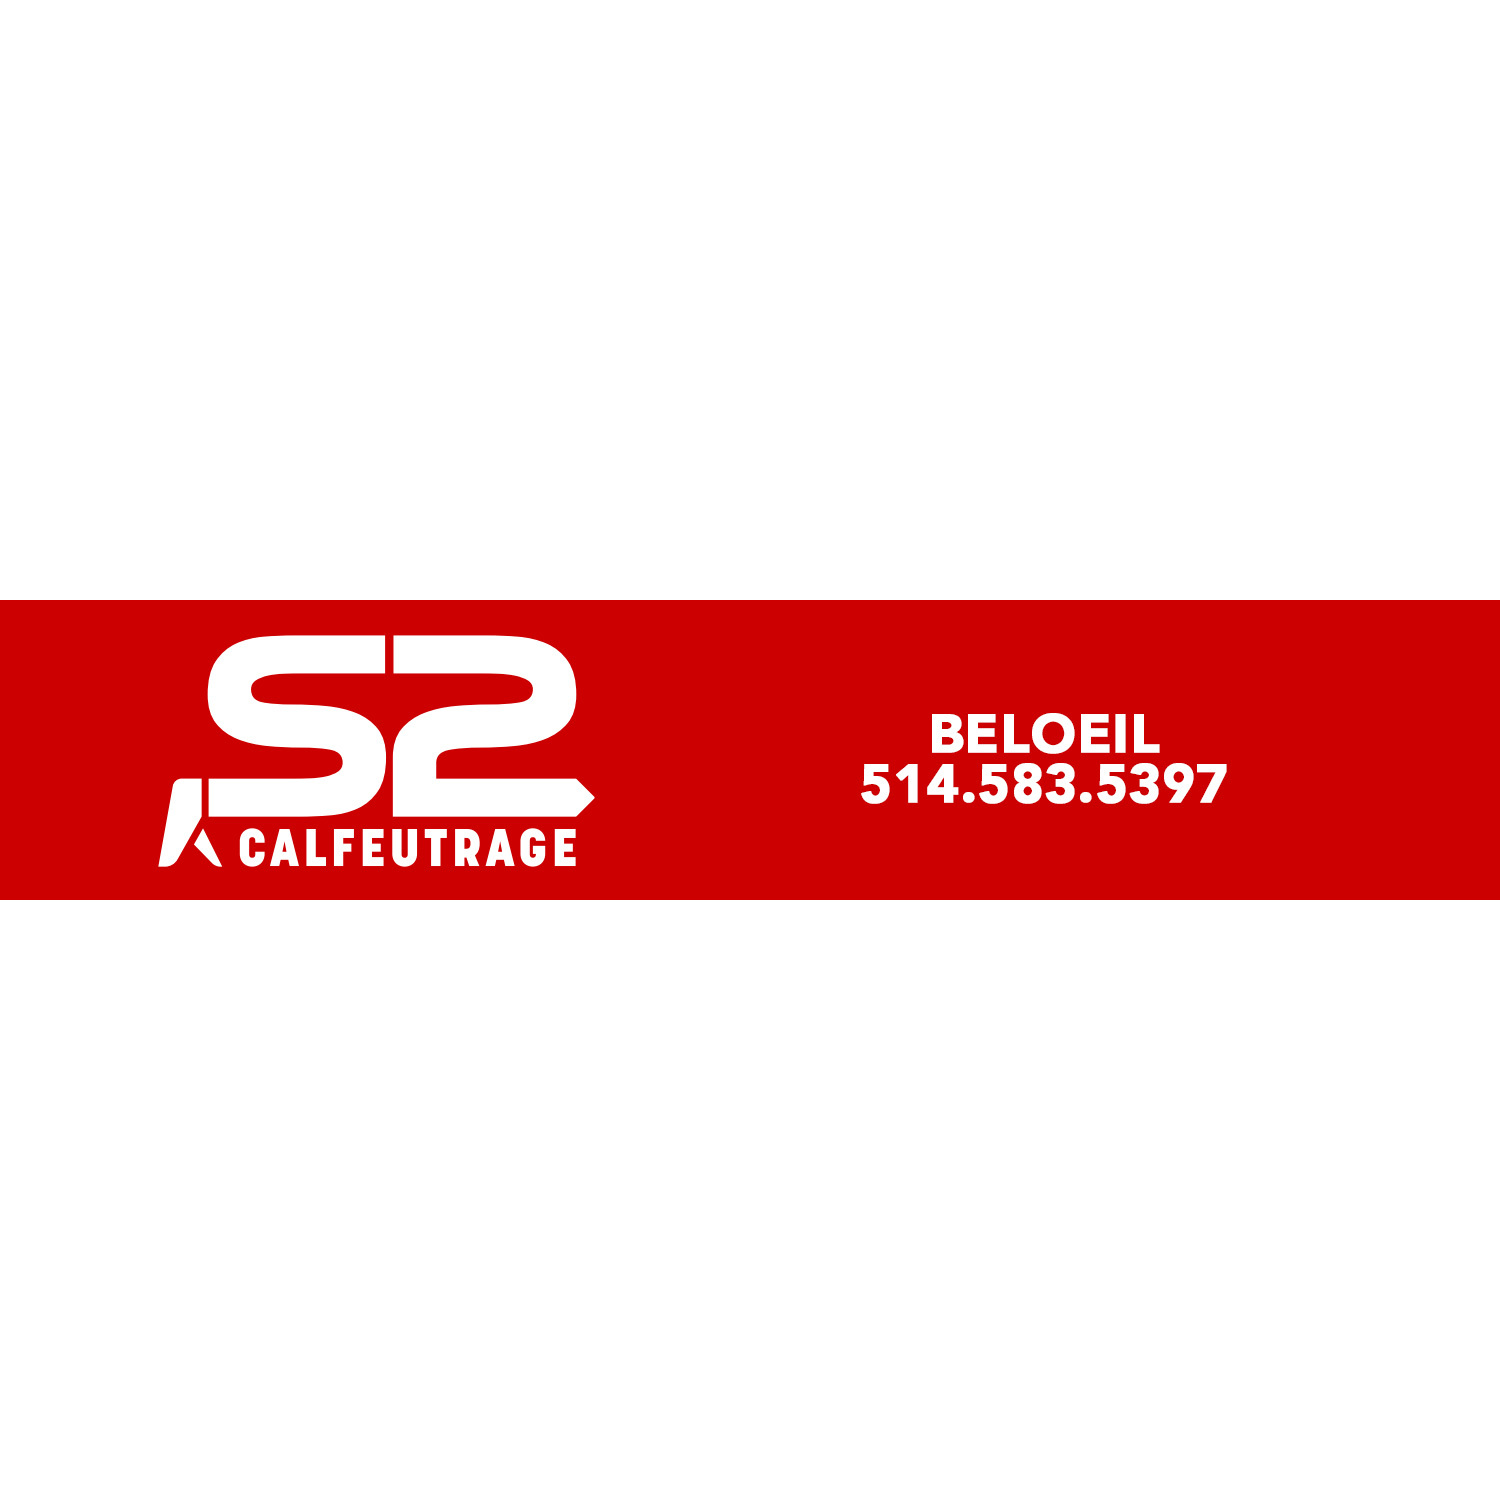 Calfeutrage S2 Rive sud, Beloeil, St-Hilaire Logo